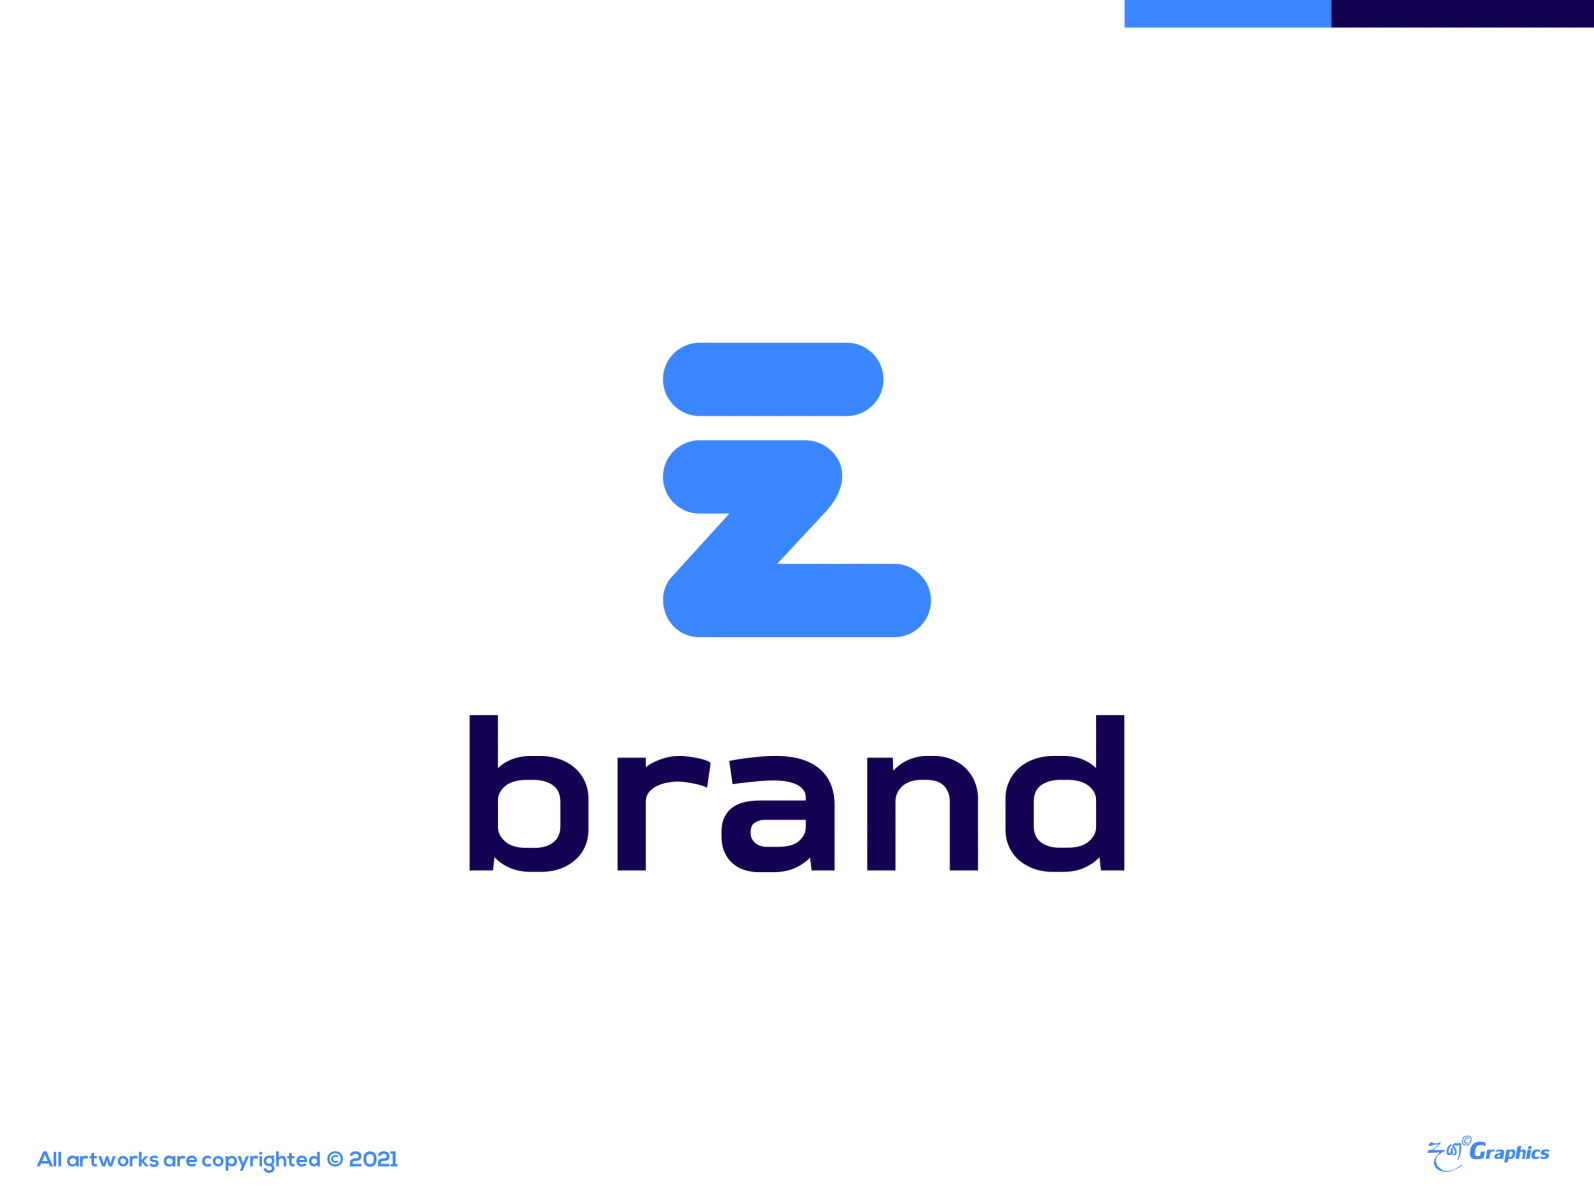 Lettermark E Branding concept branding dayagraphics design illustration letter letter logo lettermark logo logobrand logobranding logotype minimal srilanka